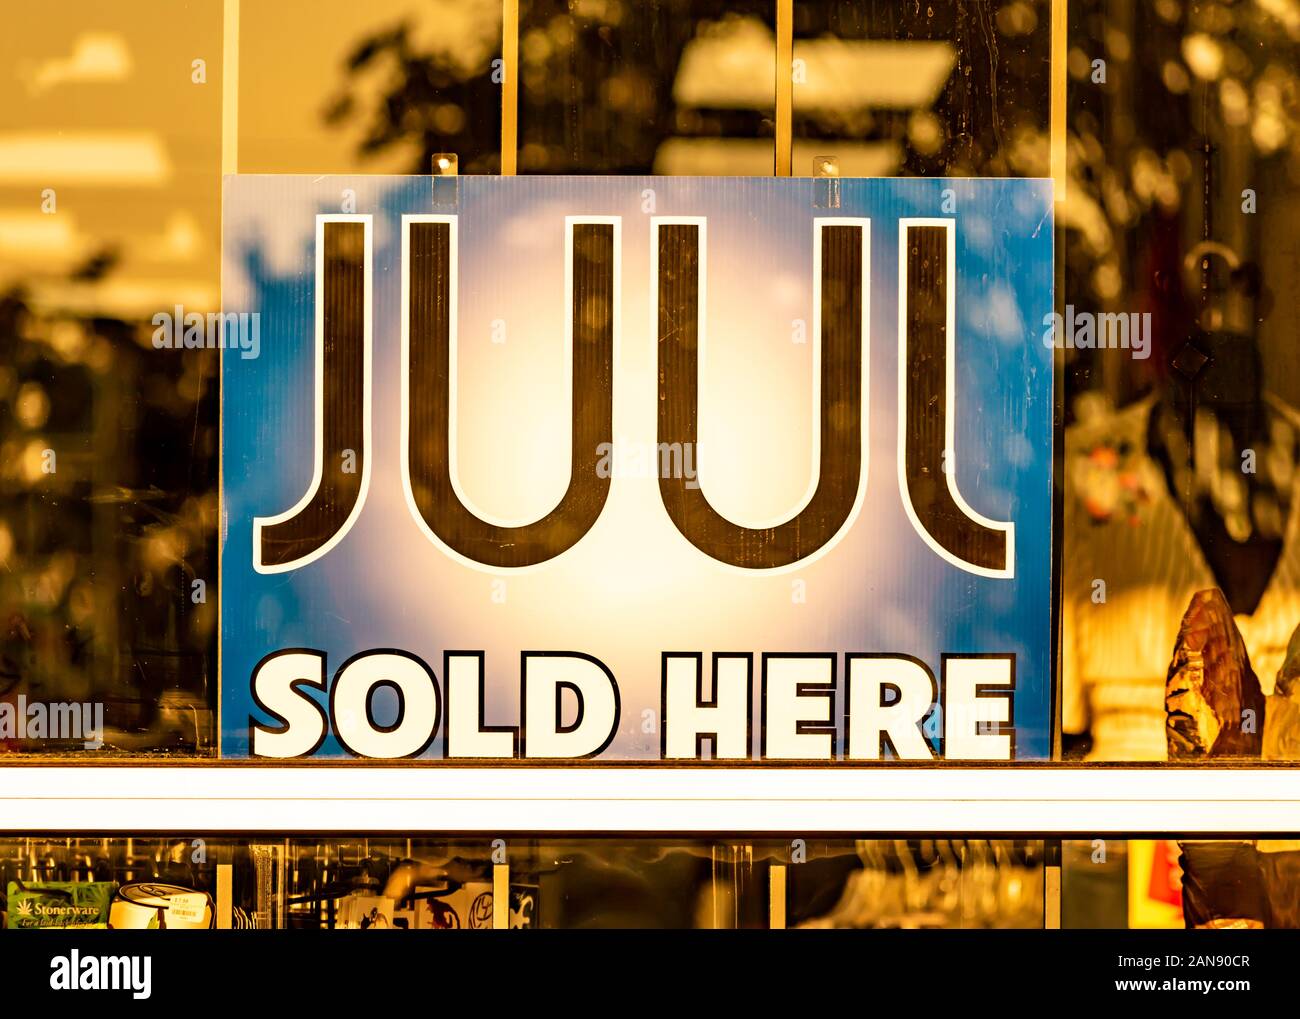 Charlotte, NC/USA - 26. Juli 2019: Horizontaler Abschluss der Schaufensteranzeige mit der Aufschrift "JUUL Sold Here" auf undurchsichtigem Schild mit goldenen Fensterreflexionen. Stockfoto